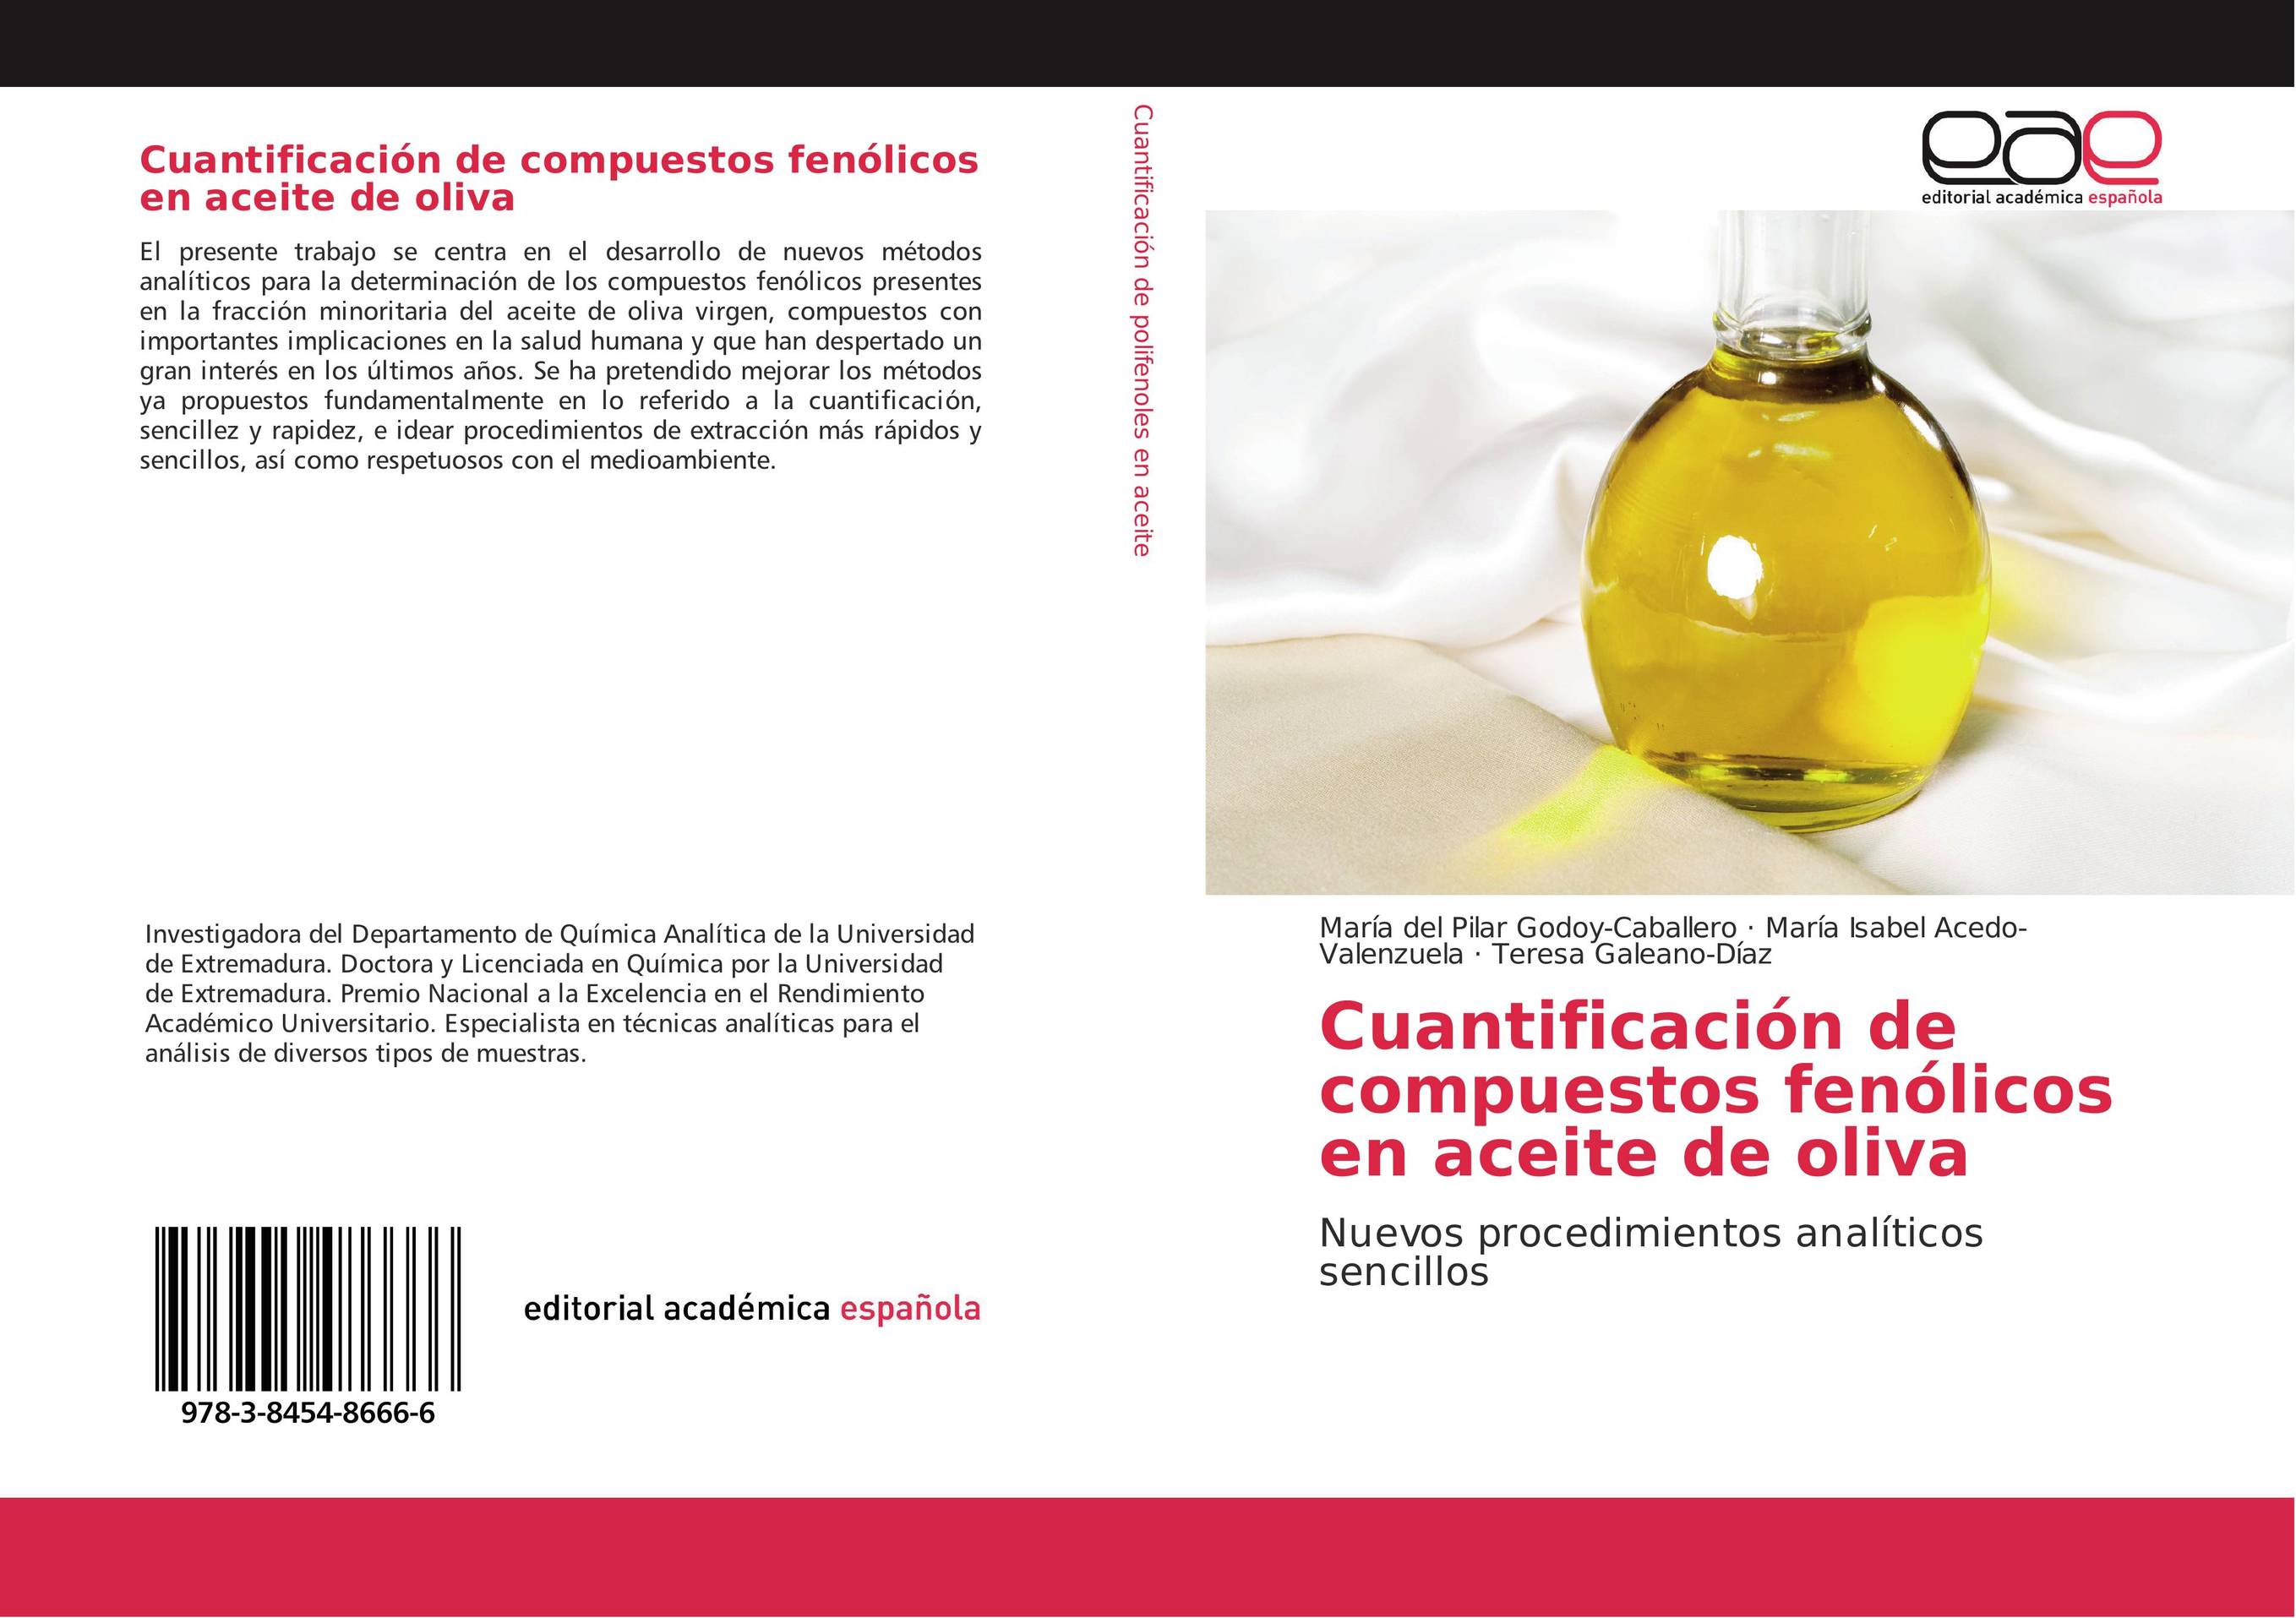 Cuantificación de compuestos fenólicos en aceite de oliva